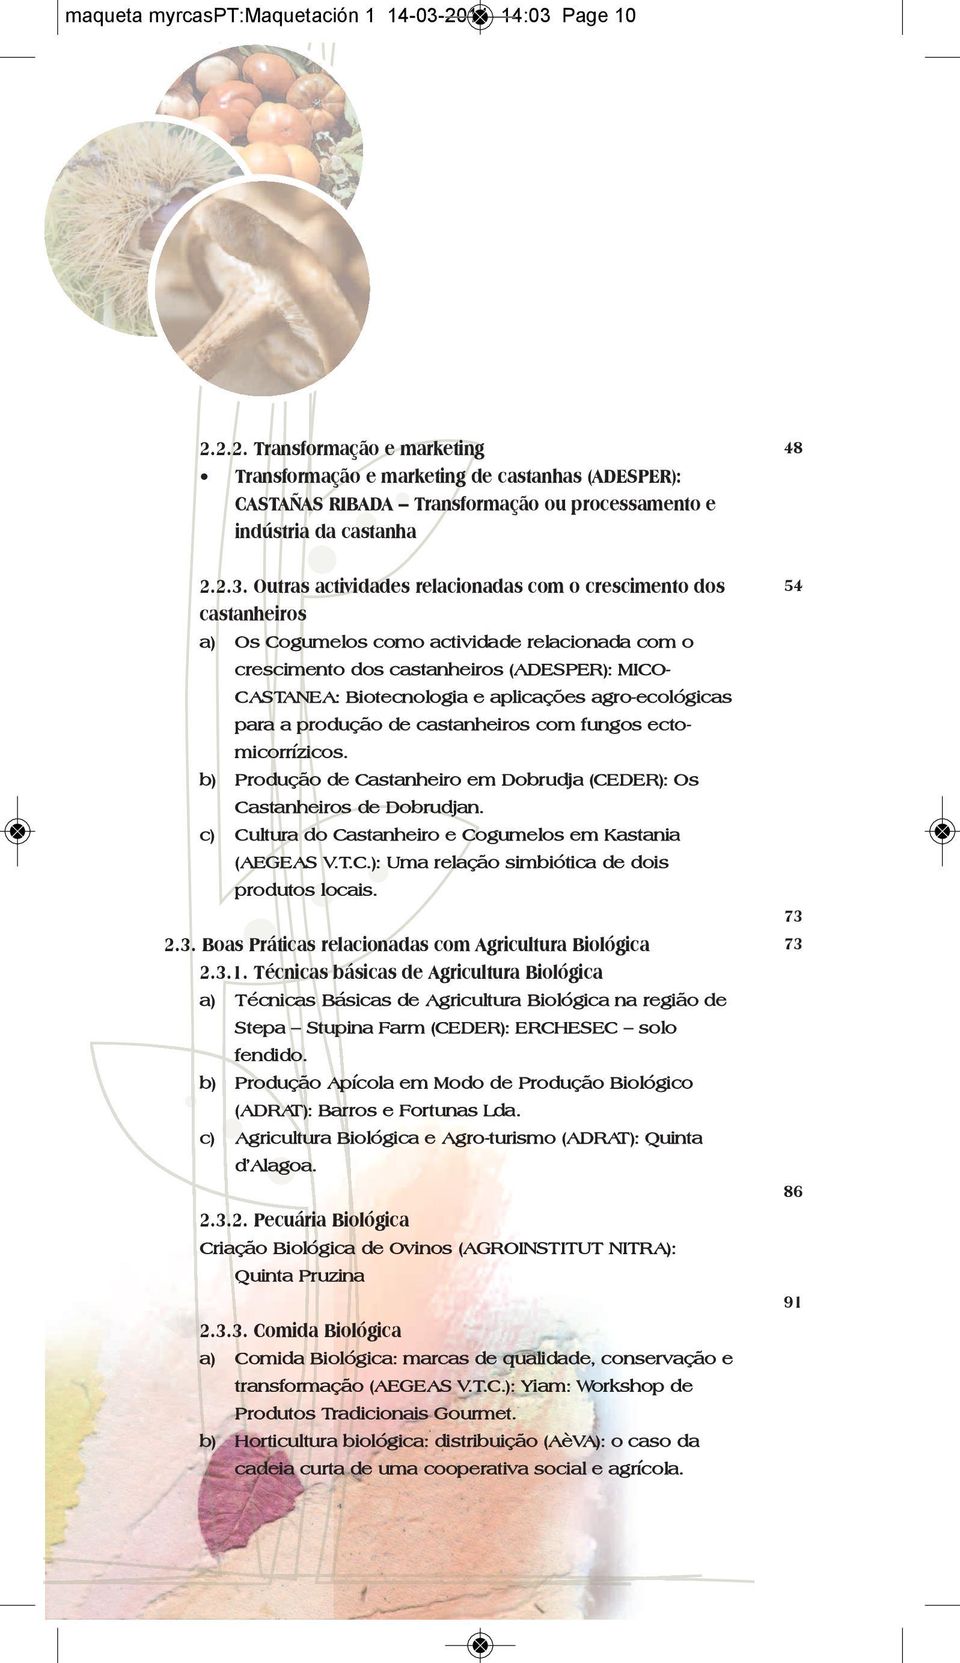 aplicações agro-ecológicas para a produção de castanheiros com fungos ectomicorrízicos. b) Produção de Castanheiro em Dobrudja (CEDER): Os Castanheiros de Dobrudjan.